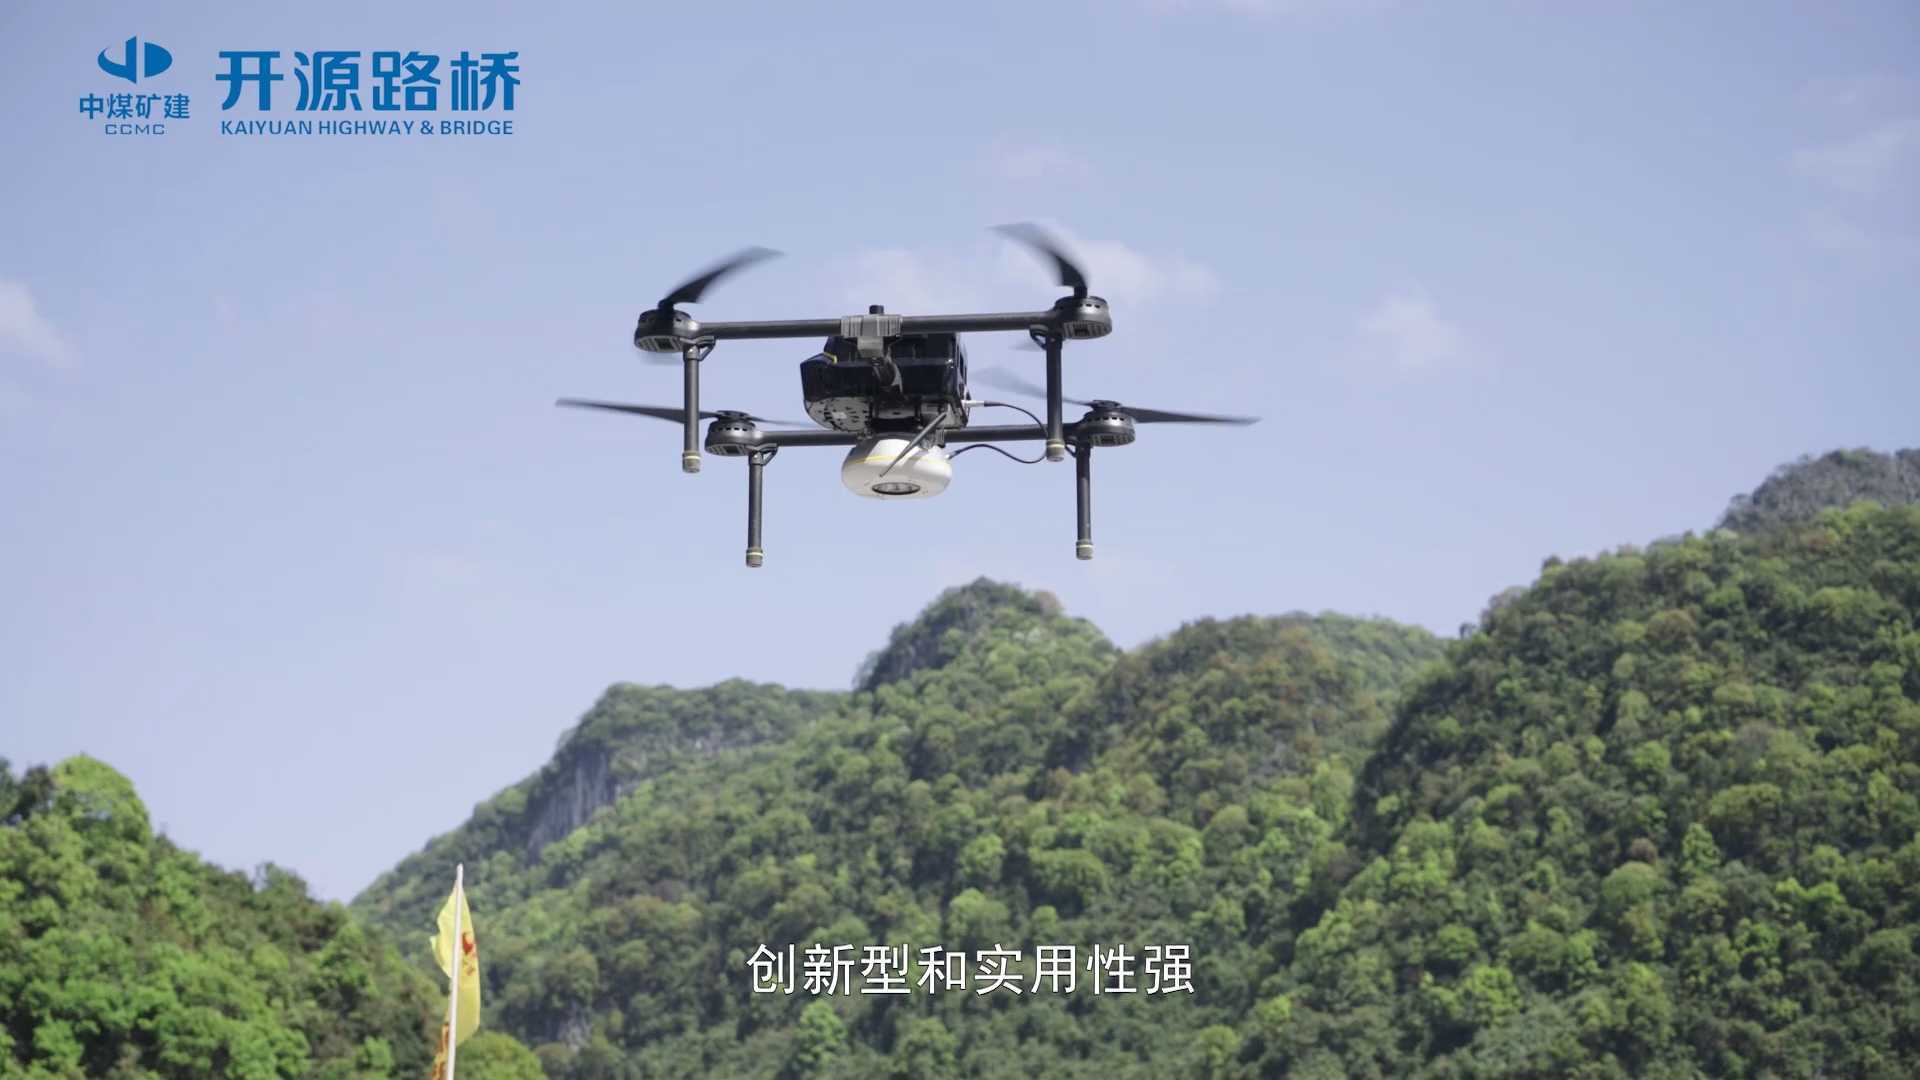 某工程公司无人机航测技术展示片-风花树传媒摄制